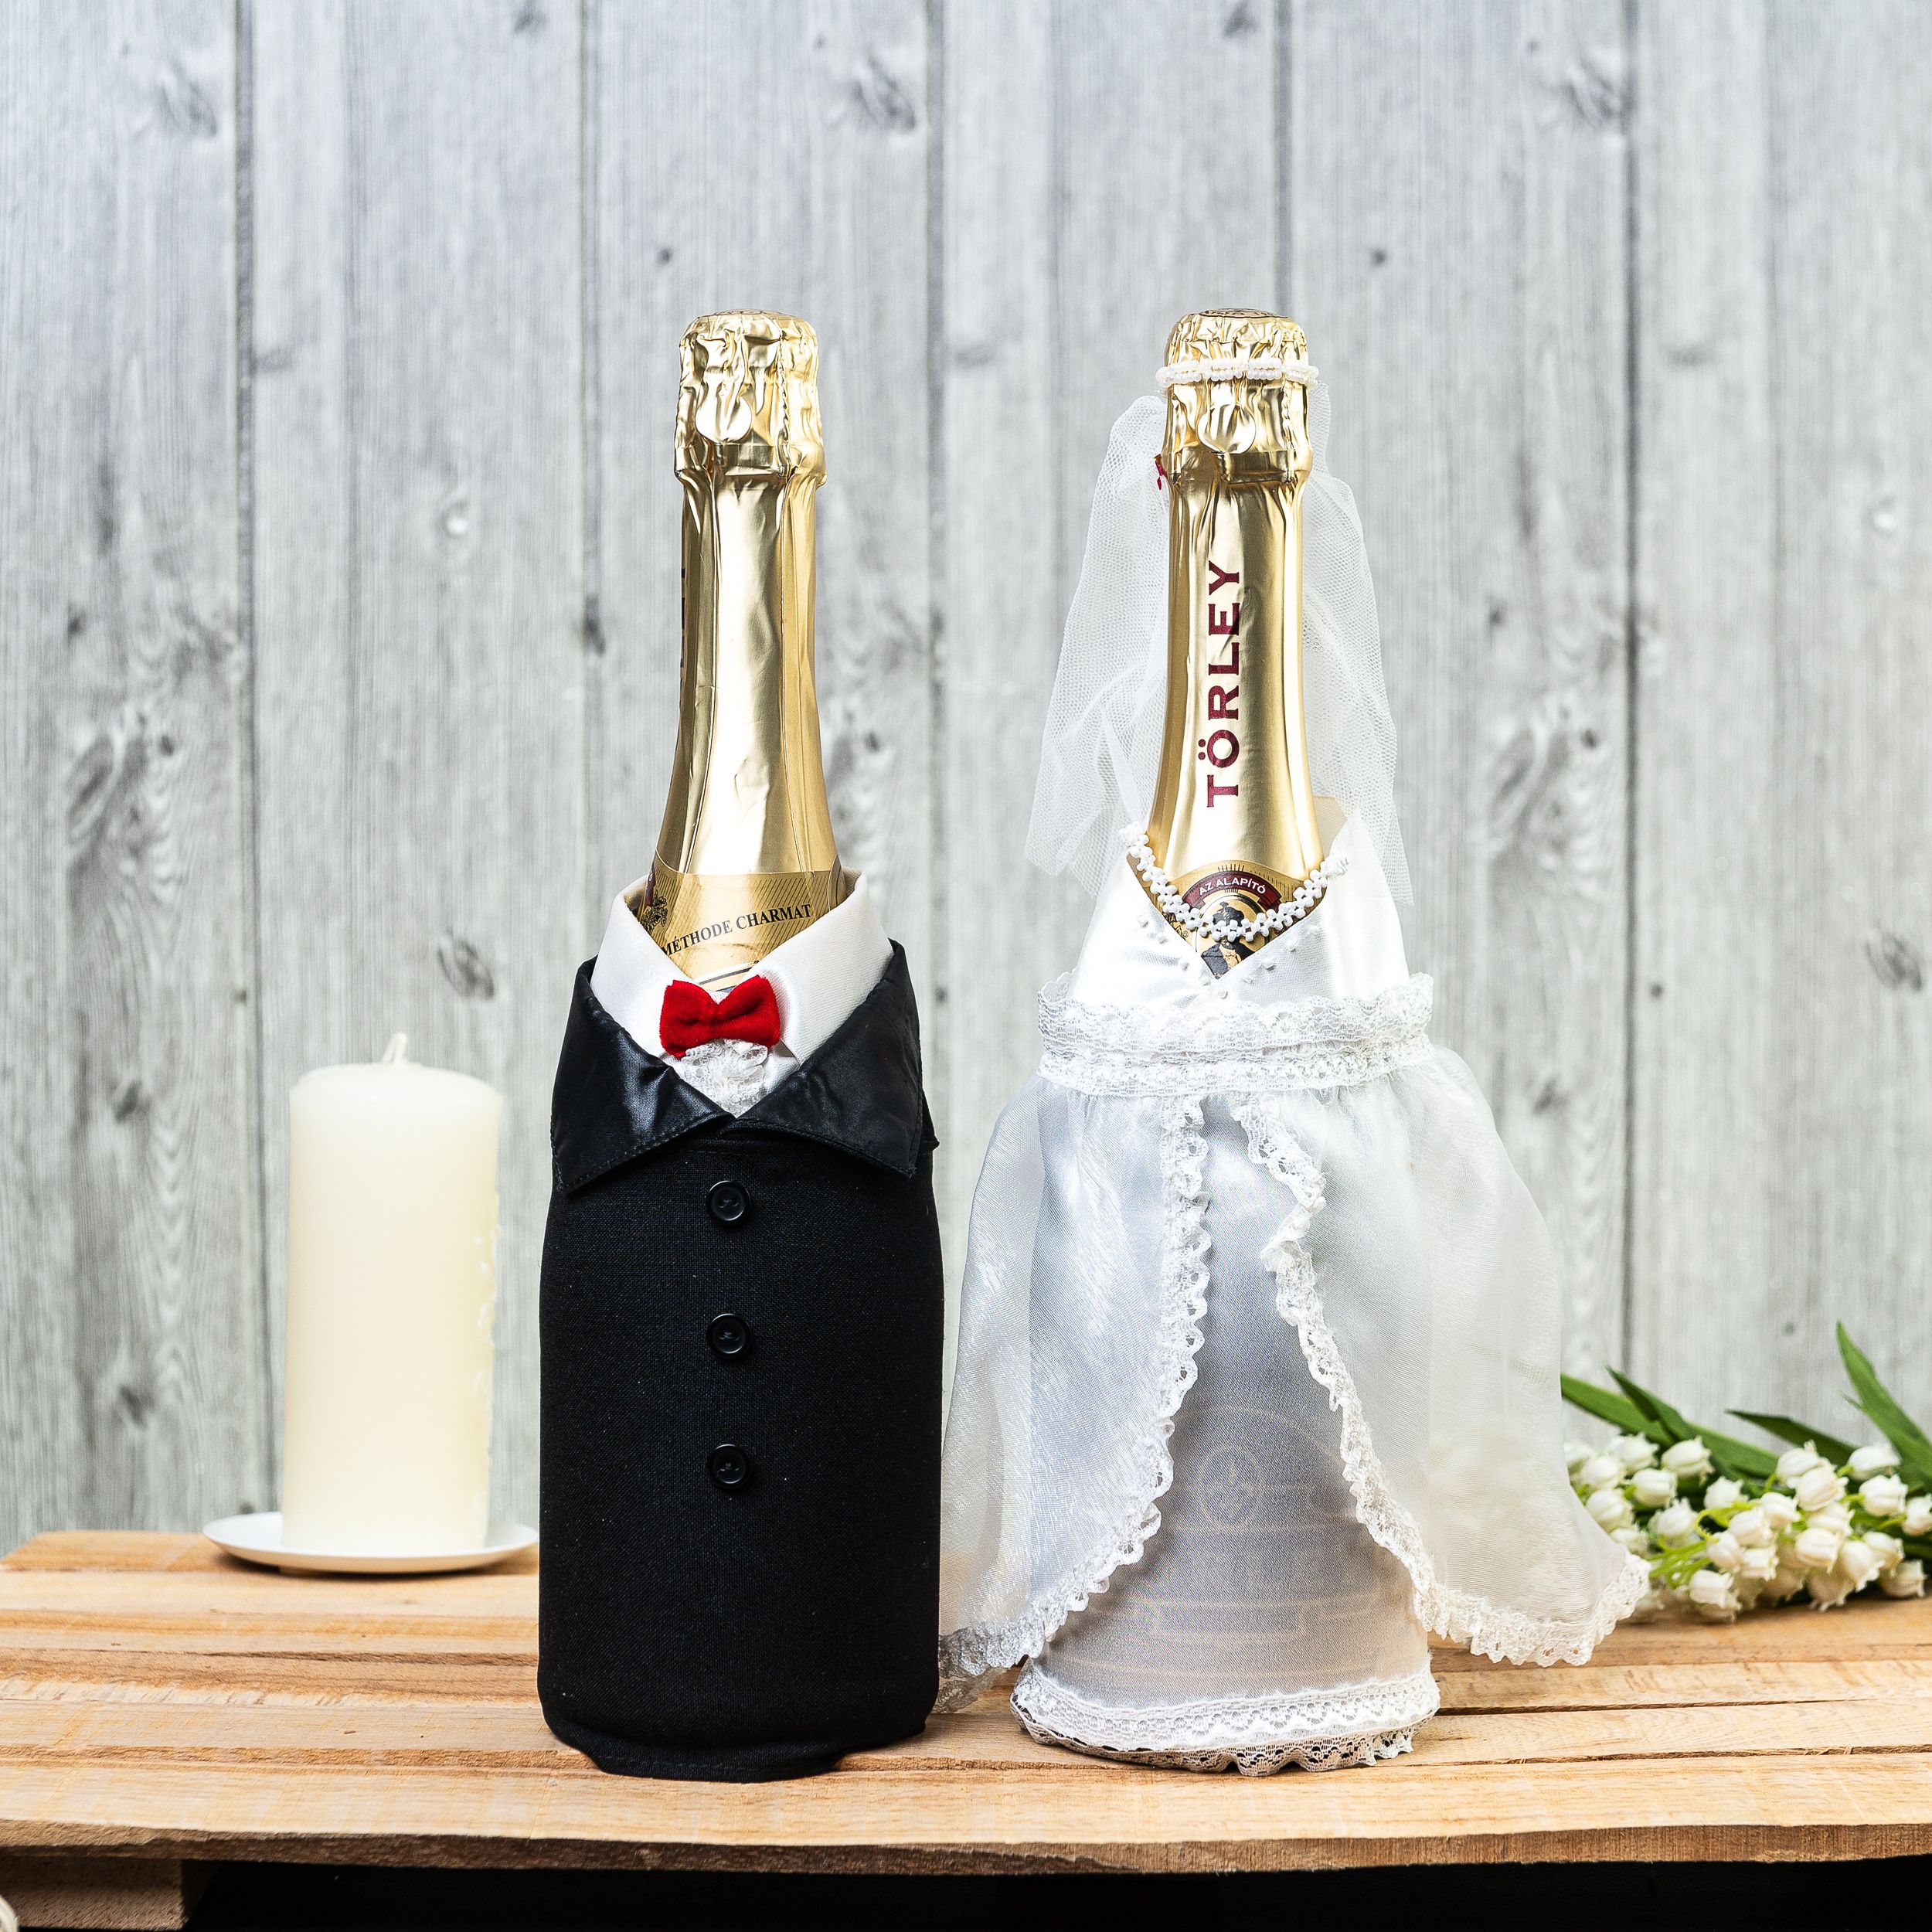 оформление бутылок на свадьбу фото